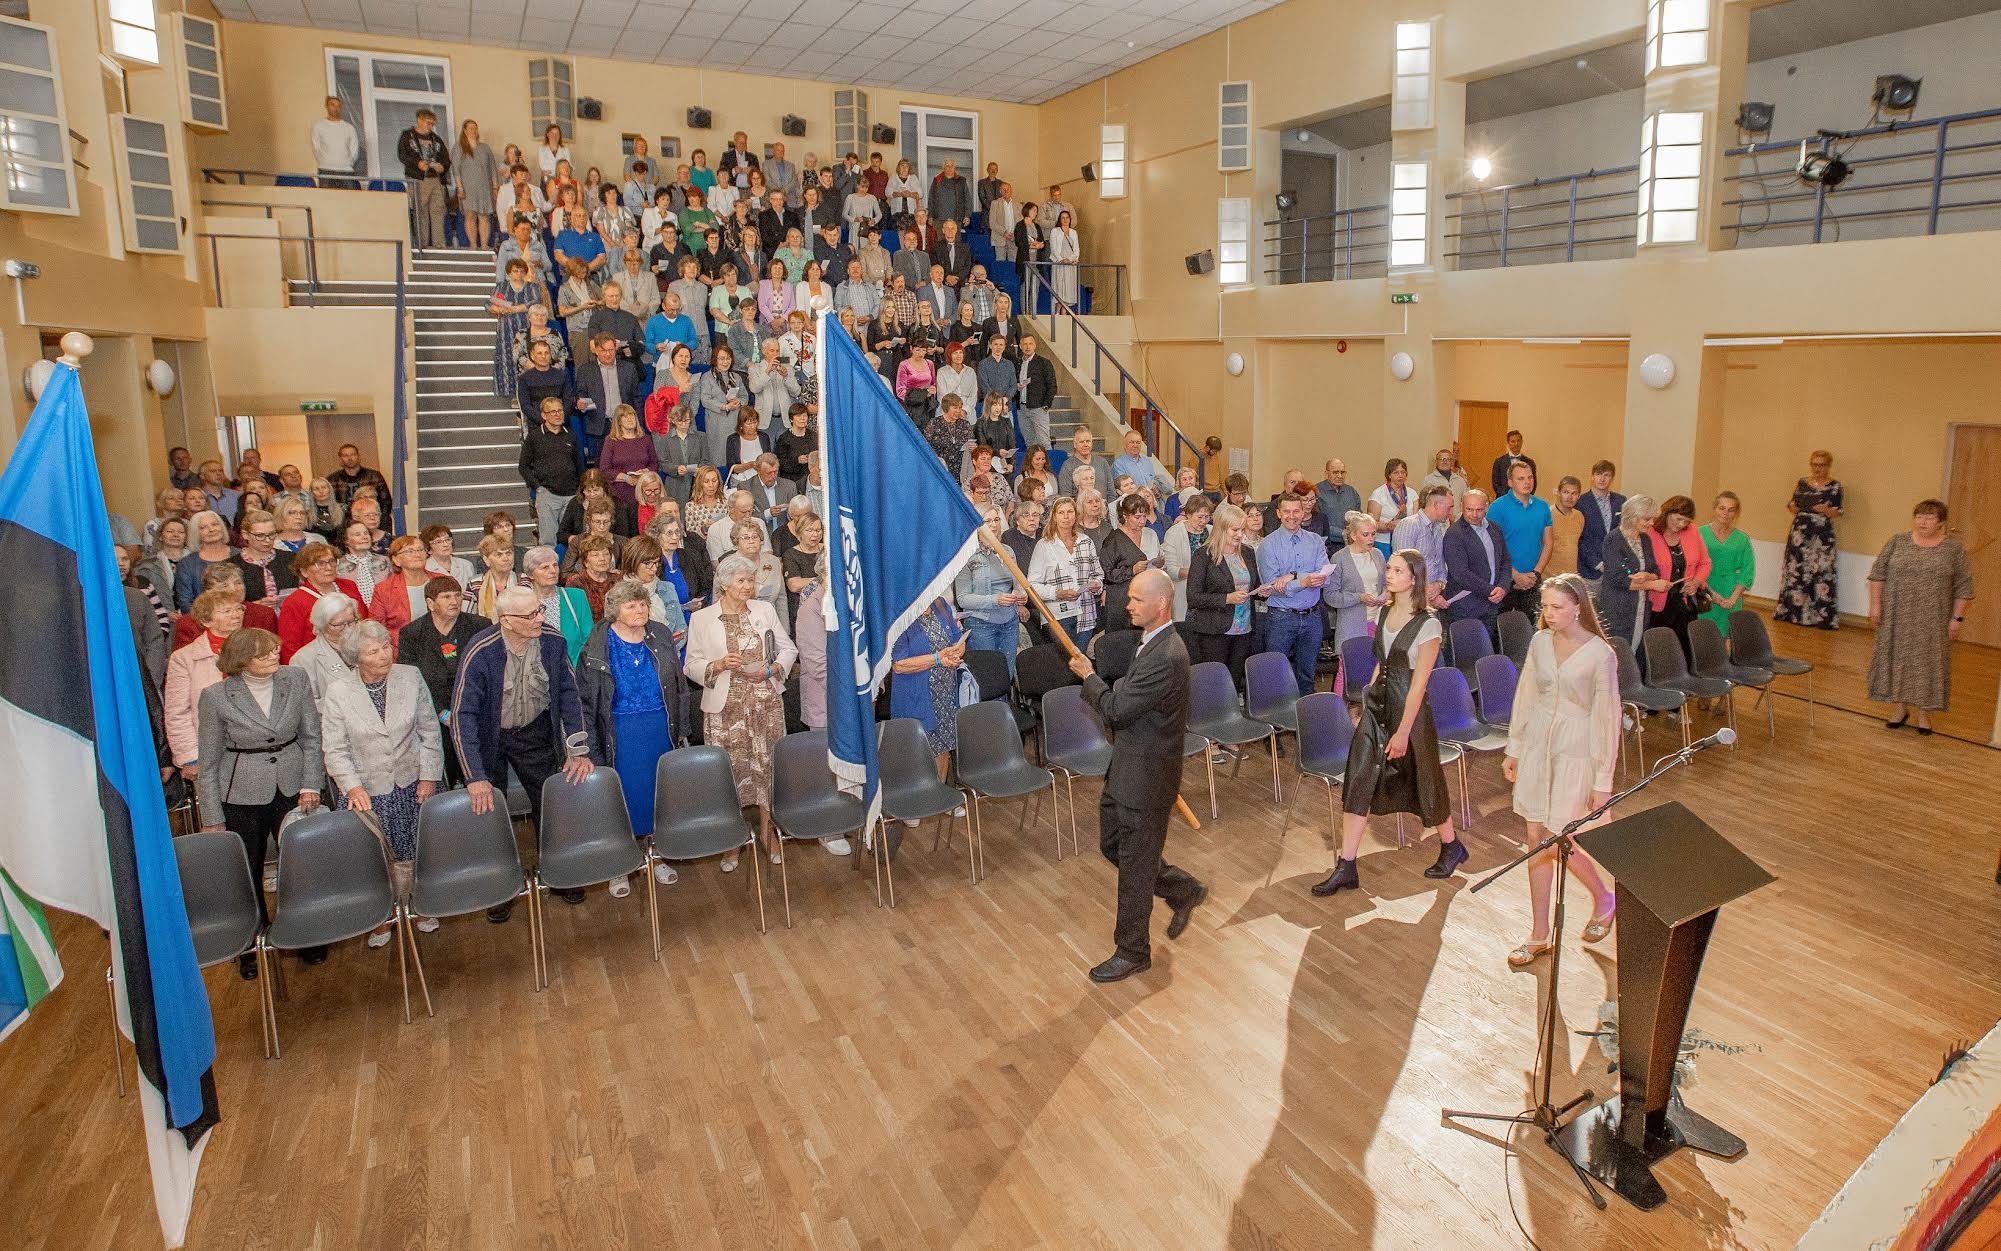 Varstu hariduselu 160. aastapäeva aktusel kandsid kooli lipu saali 47. lennu vilistlane Margus Mikson, tänavune lõpetaja Laura  Kirke Bertel Pertel ja 7. klassi õpilane Annika Kink. Foto: AIGAR NAGEL